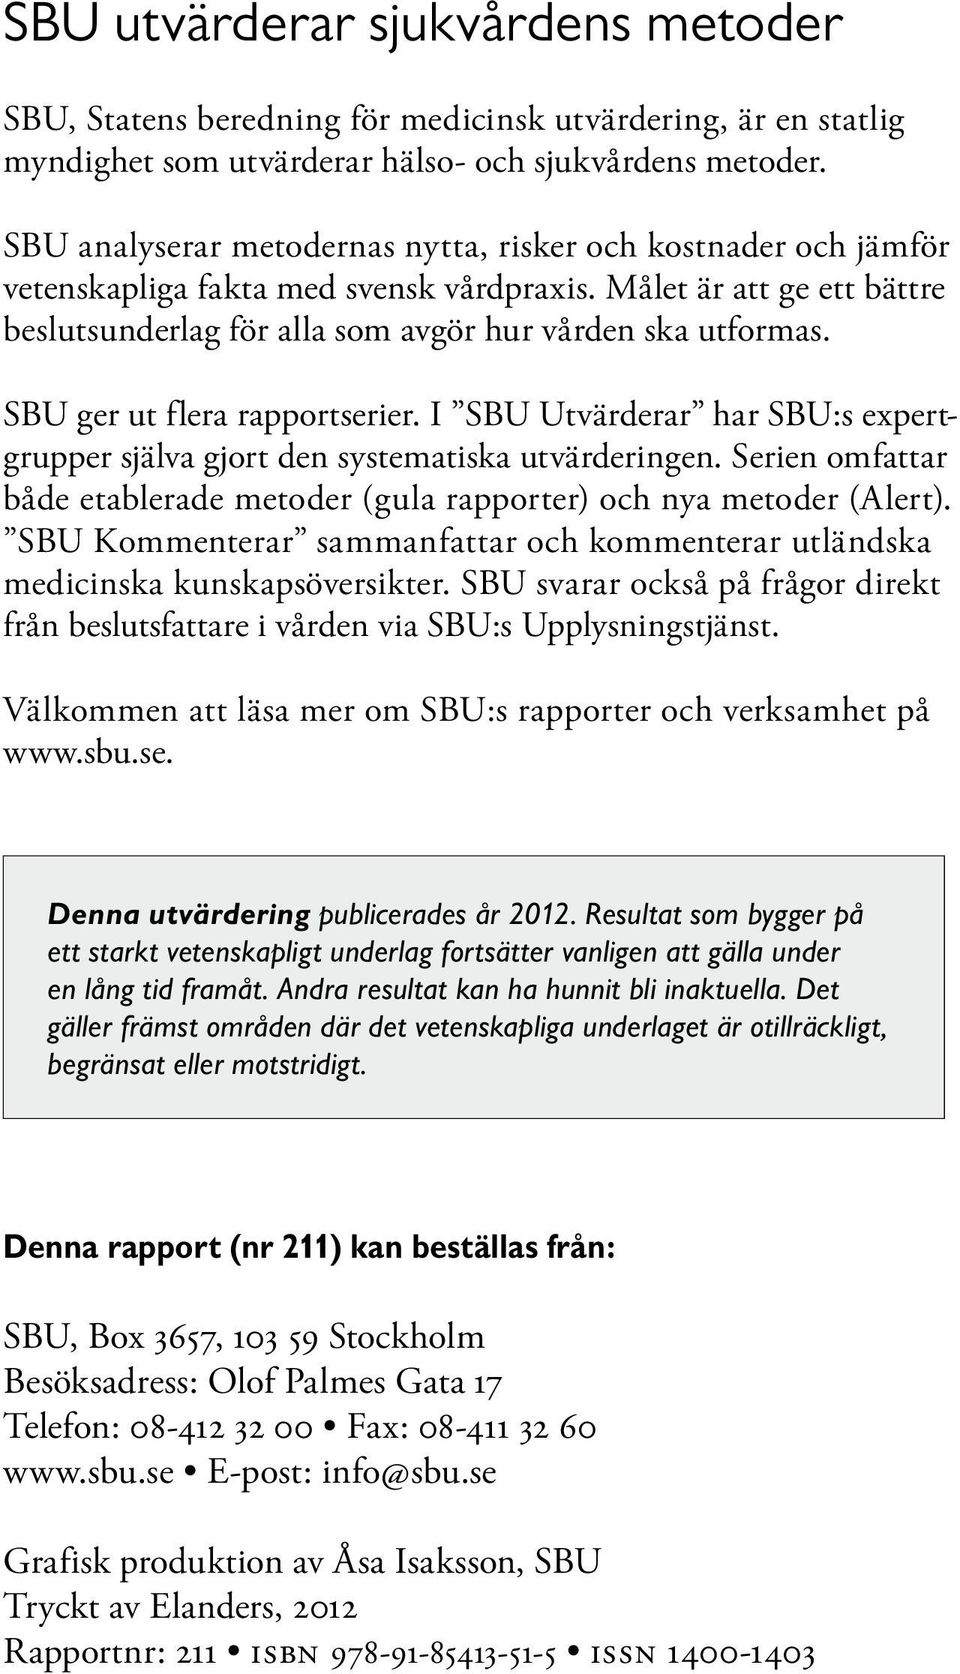 SBU ger ut flera rapportserier. I SBU Utvärderar har SBU:s expertgrupper själva gjort den systematiska utvärderingen. Serien omfattar både etablerade metoder (gula rapporter) och nya metoder (Alert).